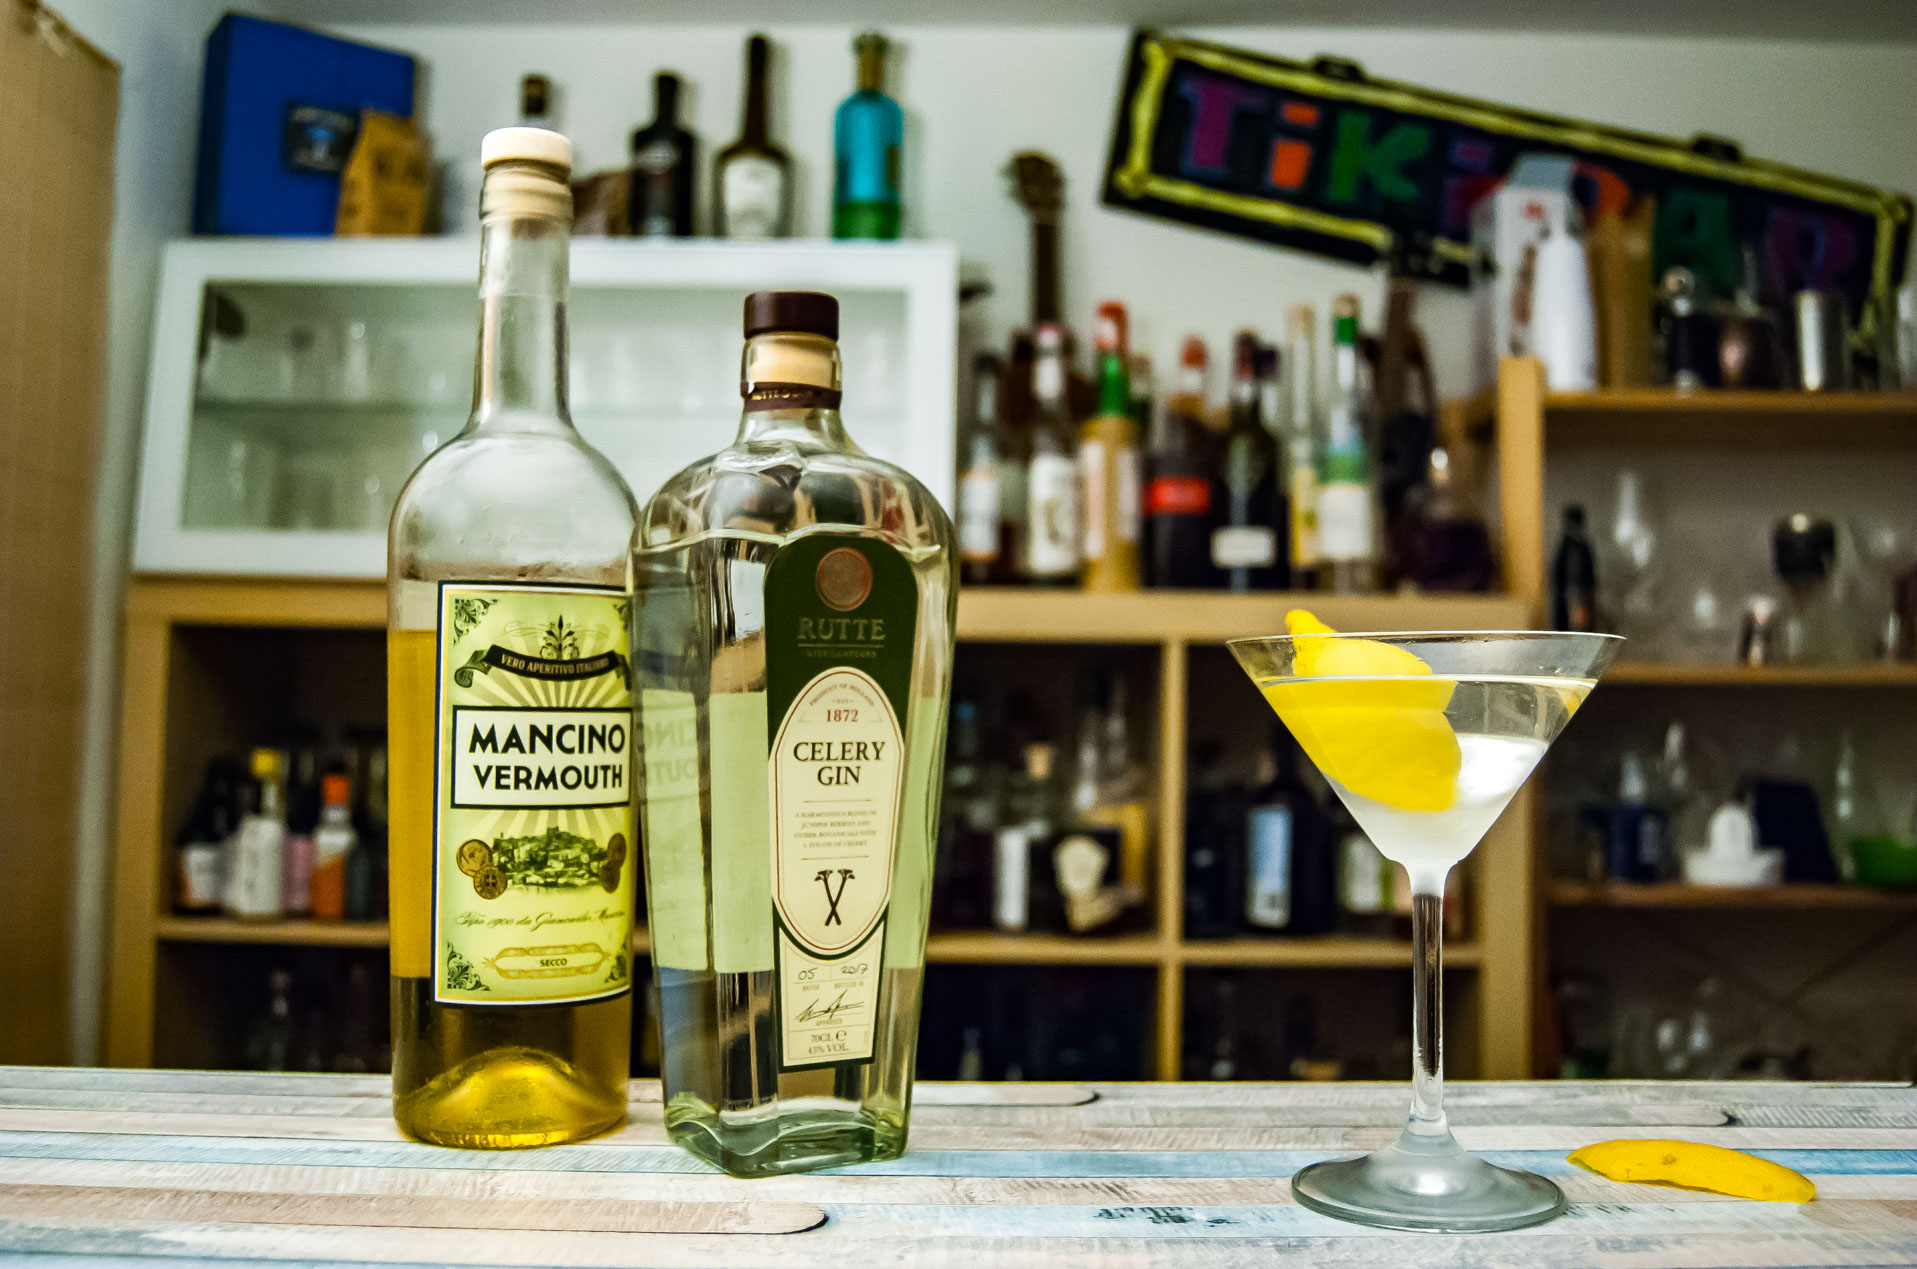 Rutte Celery Gin im Martini mit Mancino Vermouth Secco. 